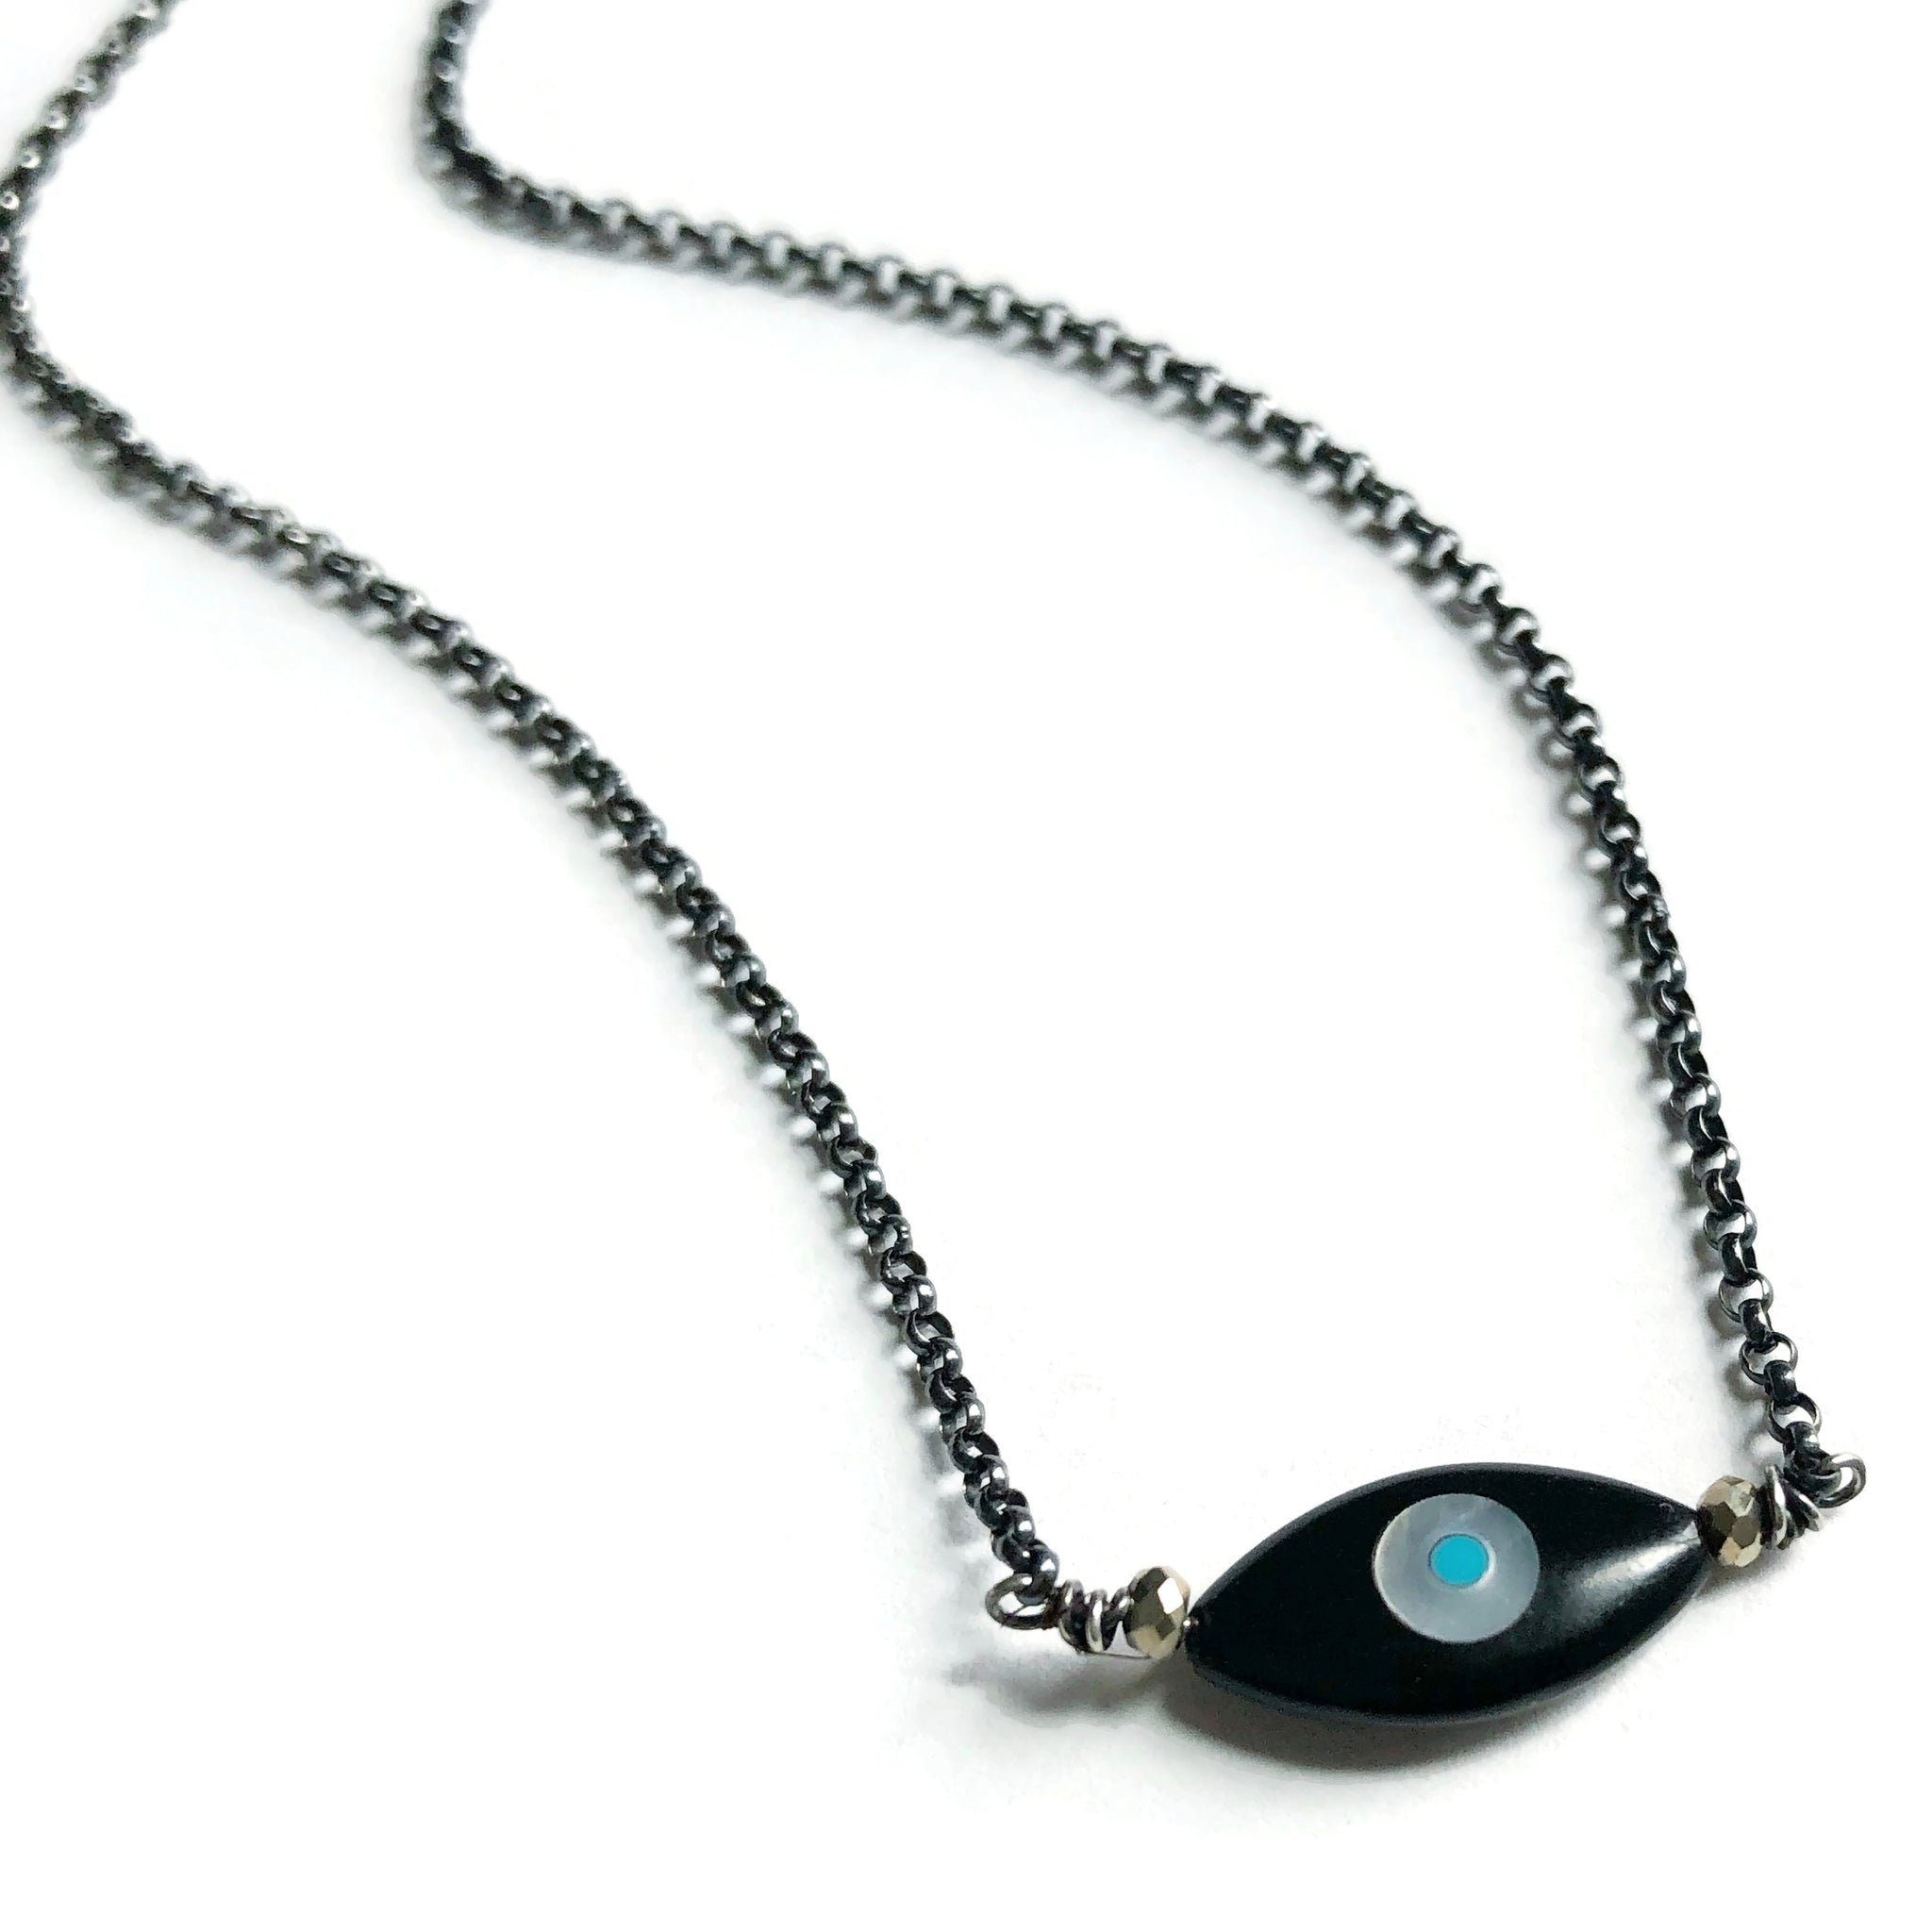 Evil Eye Pendant  Buy Online Evil Eye Black Thread Chain Pendant